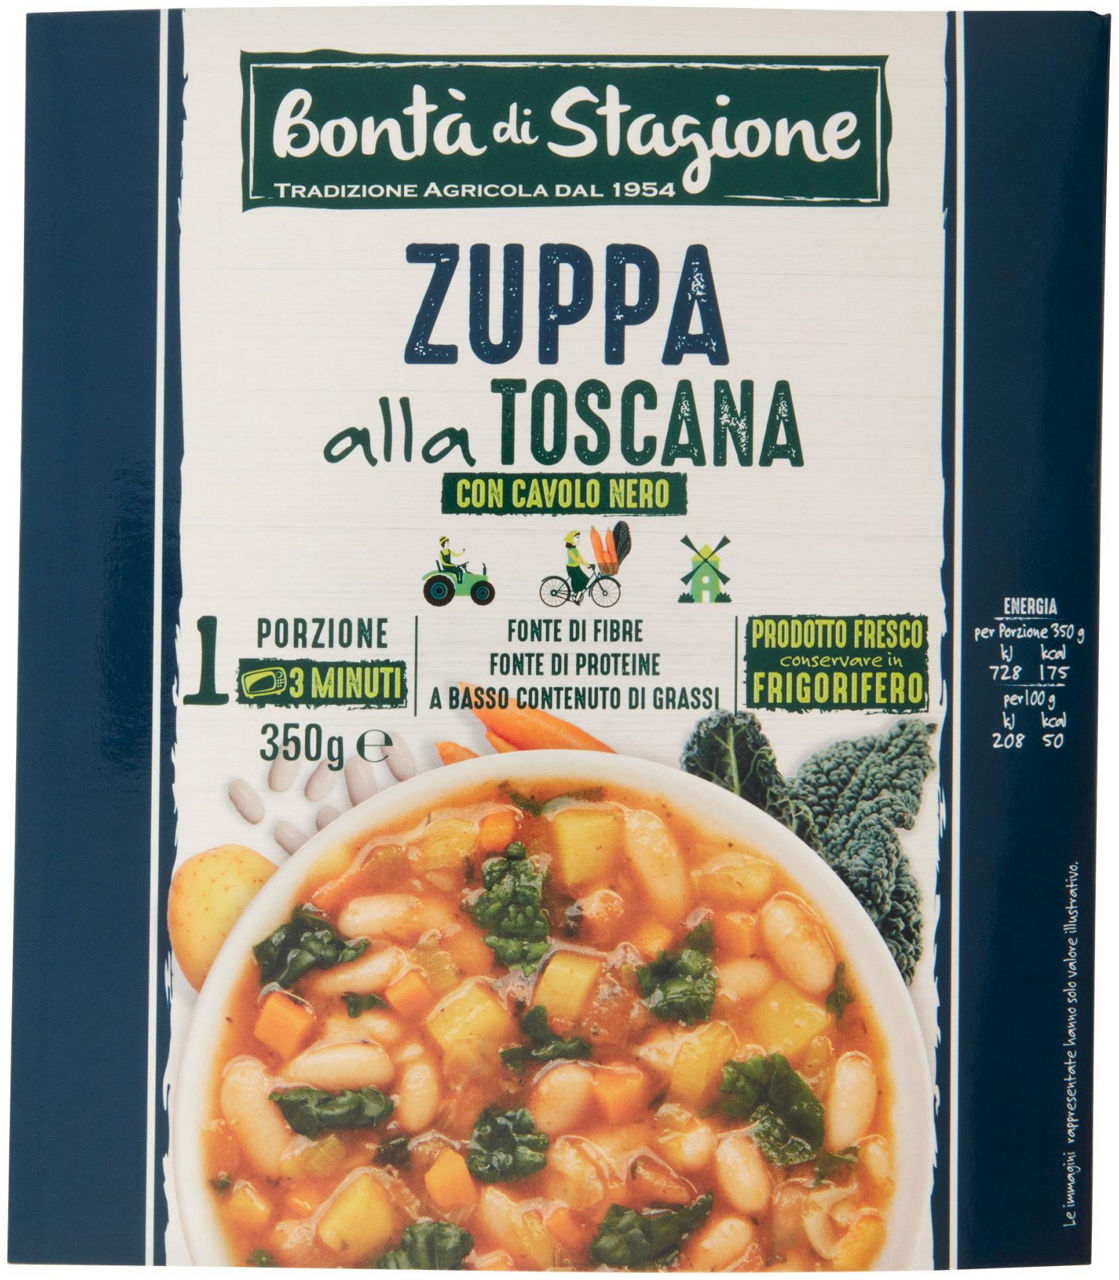 Zuppa alla Toscana con cavolo nero 1 porzione 350 g - 0